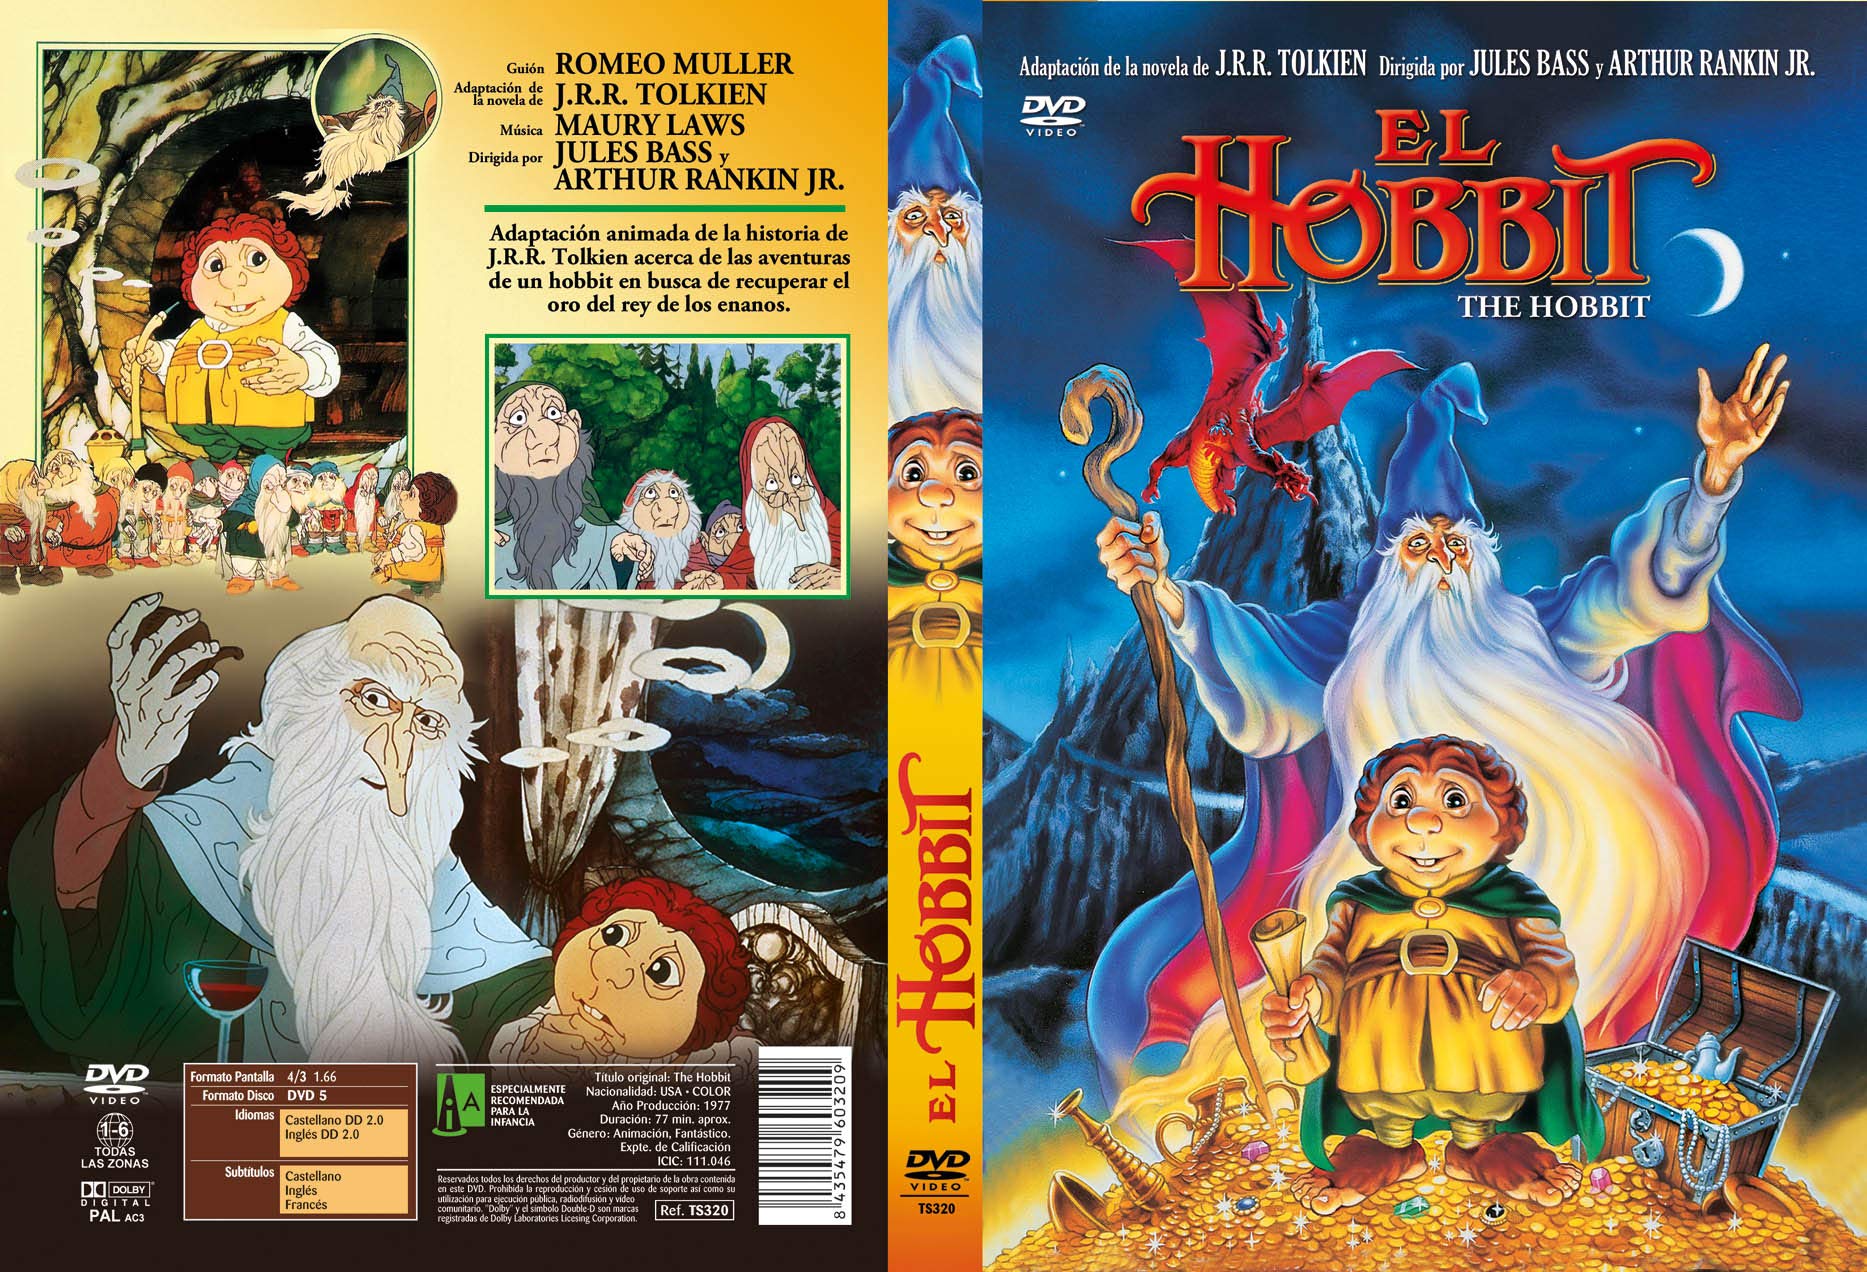 Der Hobbit - The Hobbit - DVD Region 2 - Spanisch Import - English Audio - Kein Deutsche